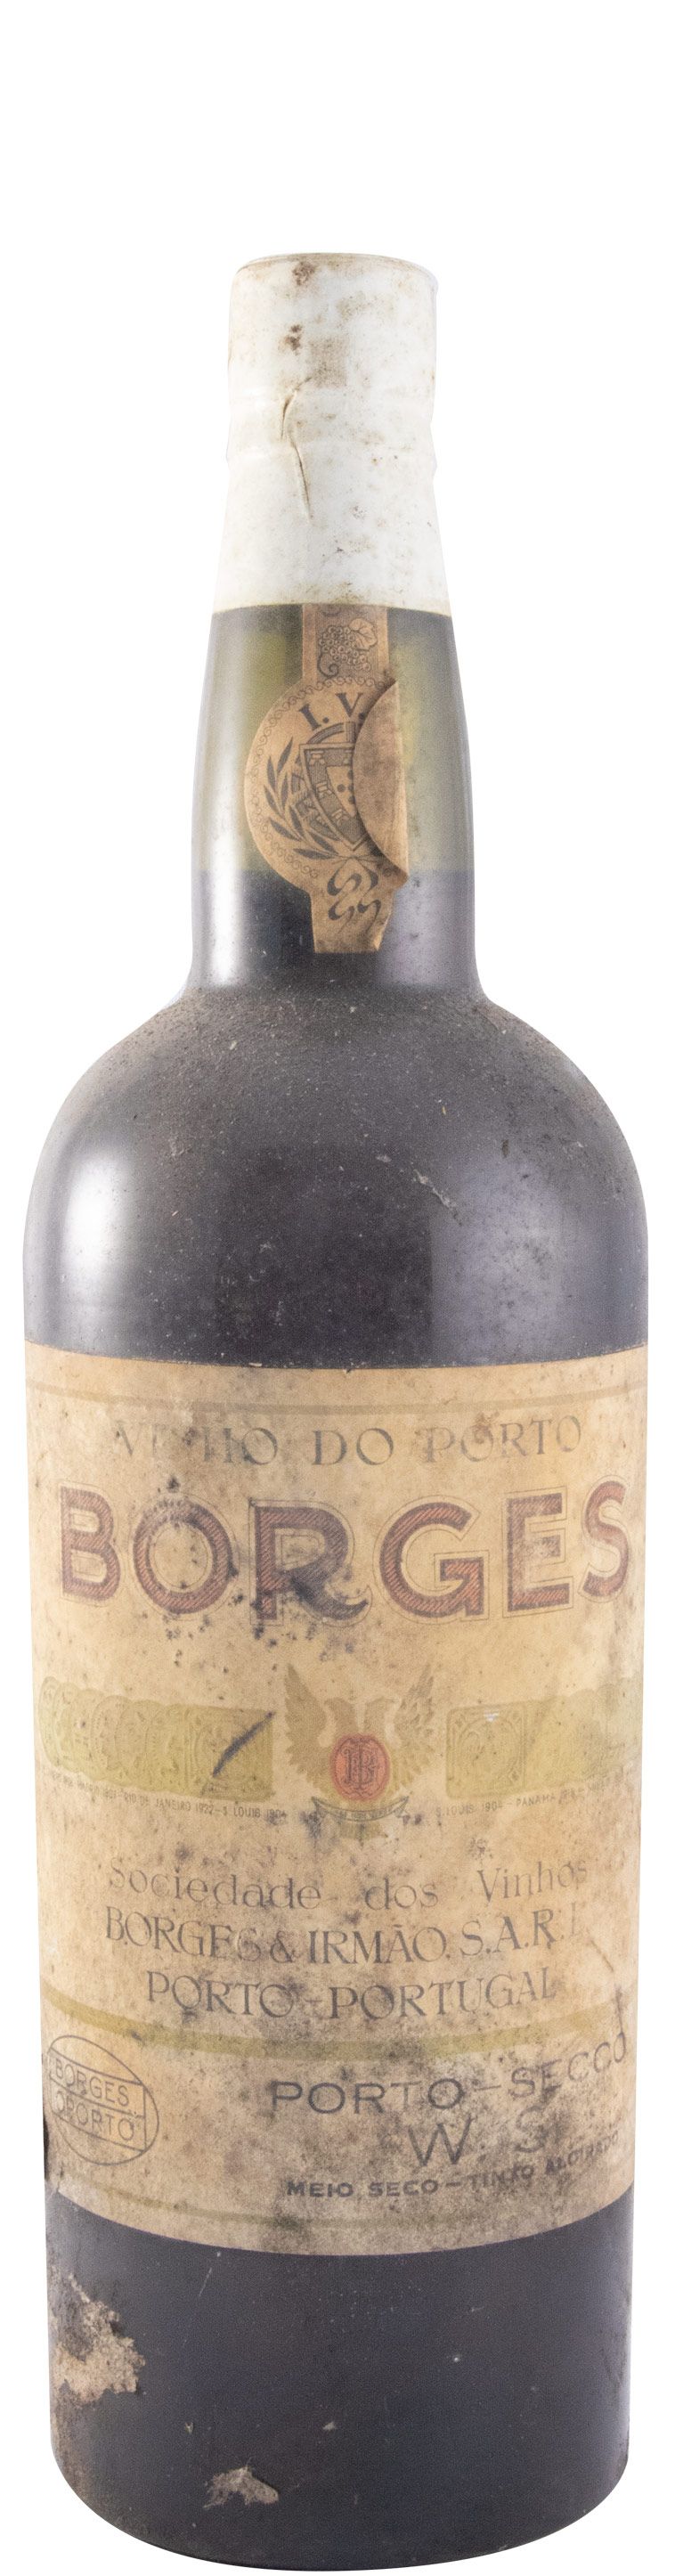 Borges WS Secco Medium Dry Port